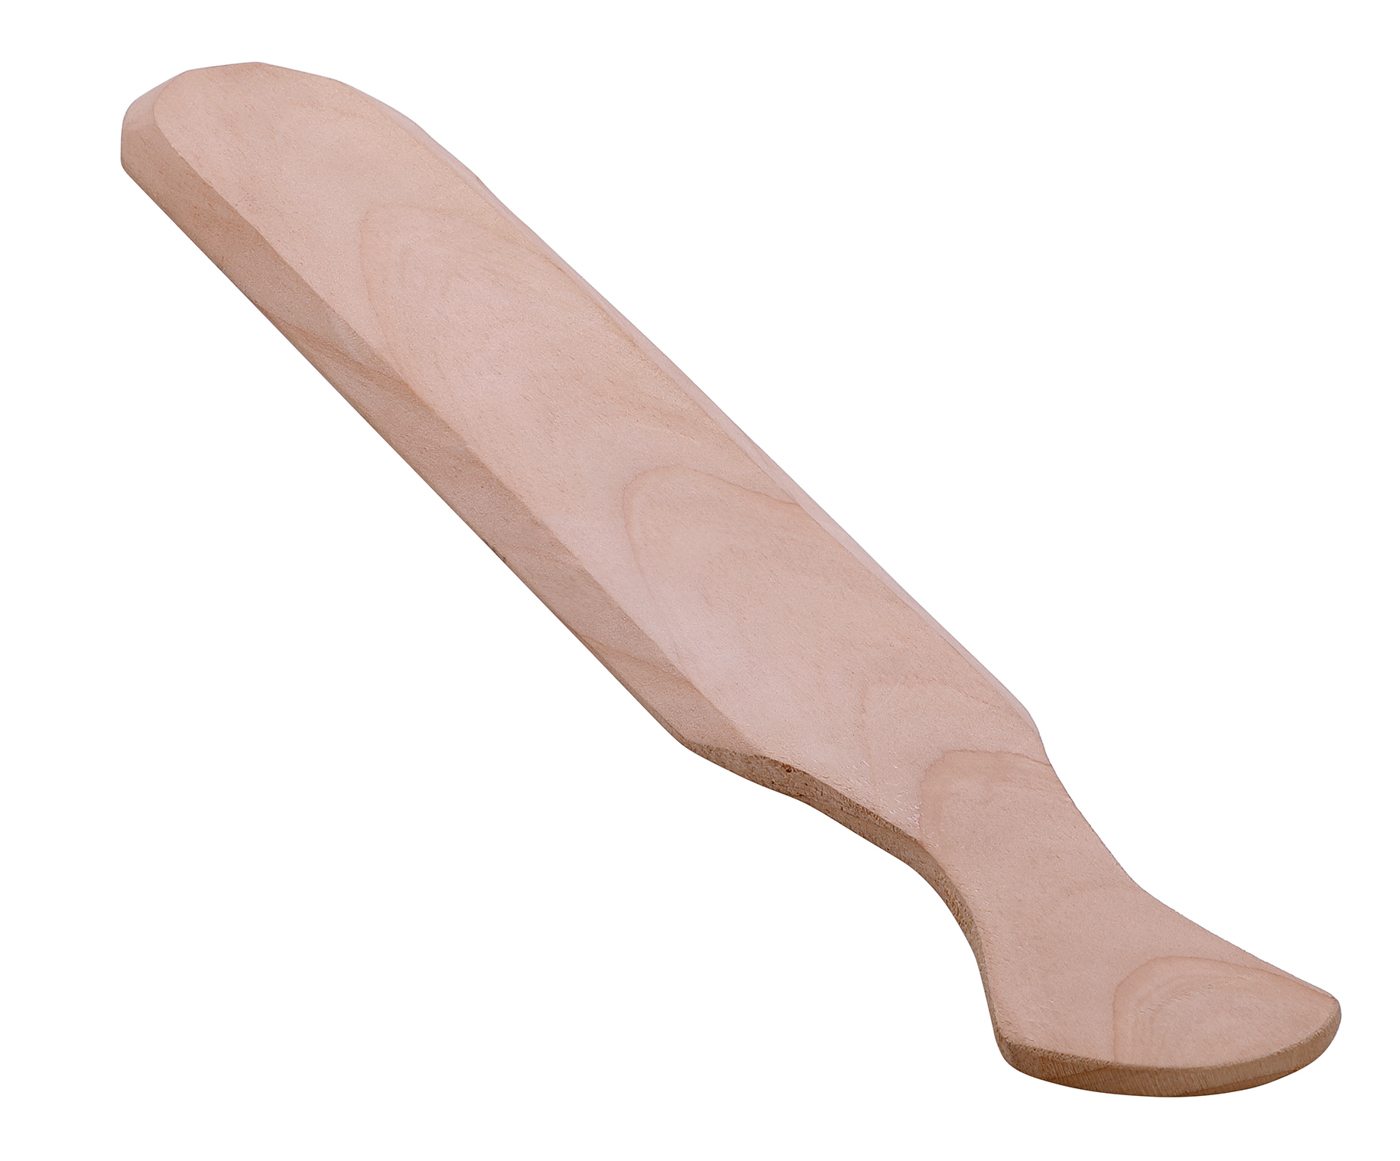 Bartscher Teigwendemesser C100 | Material: Holz | Maße: 5,5 x 43 x 10 cm. Gewicht: 0,048 kg